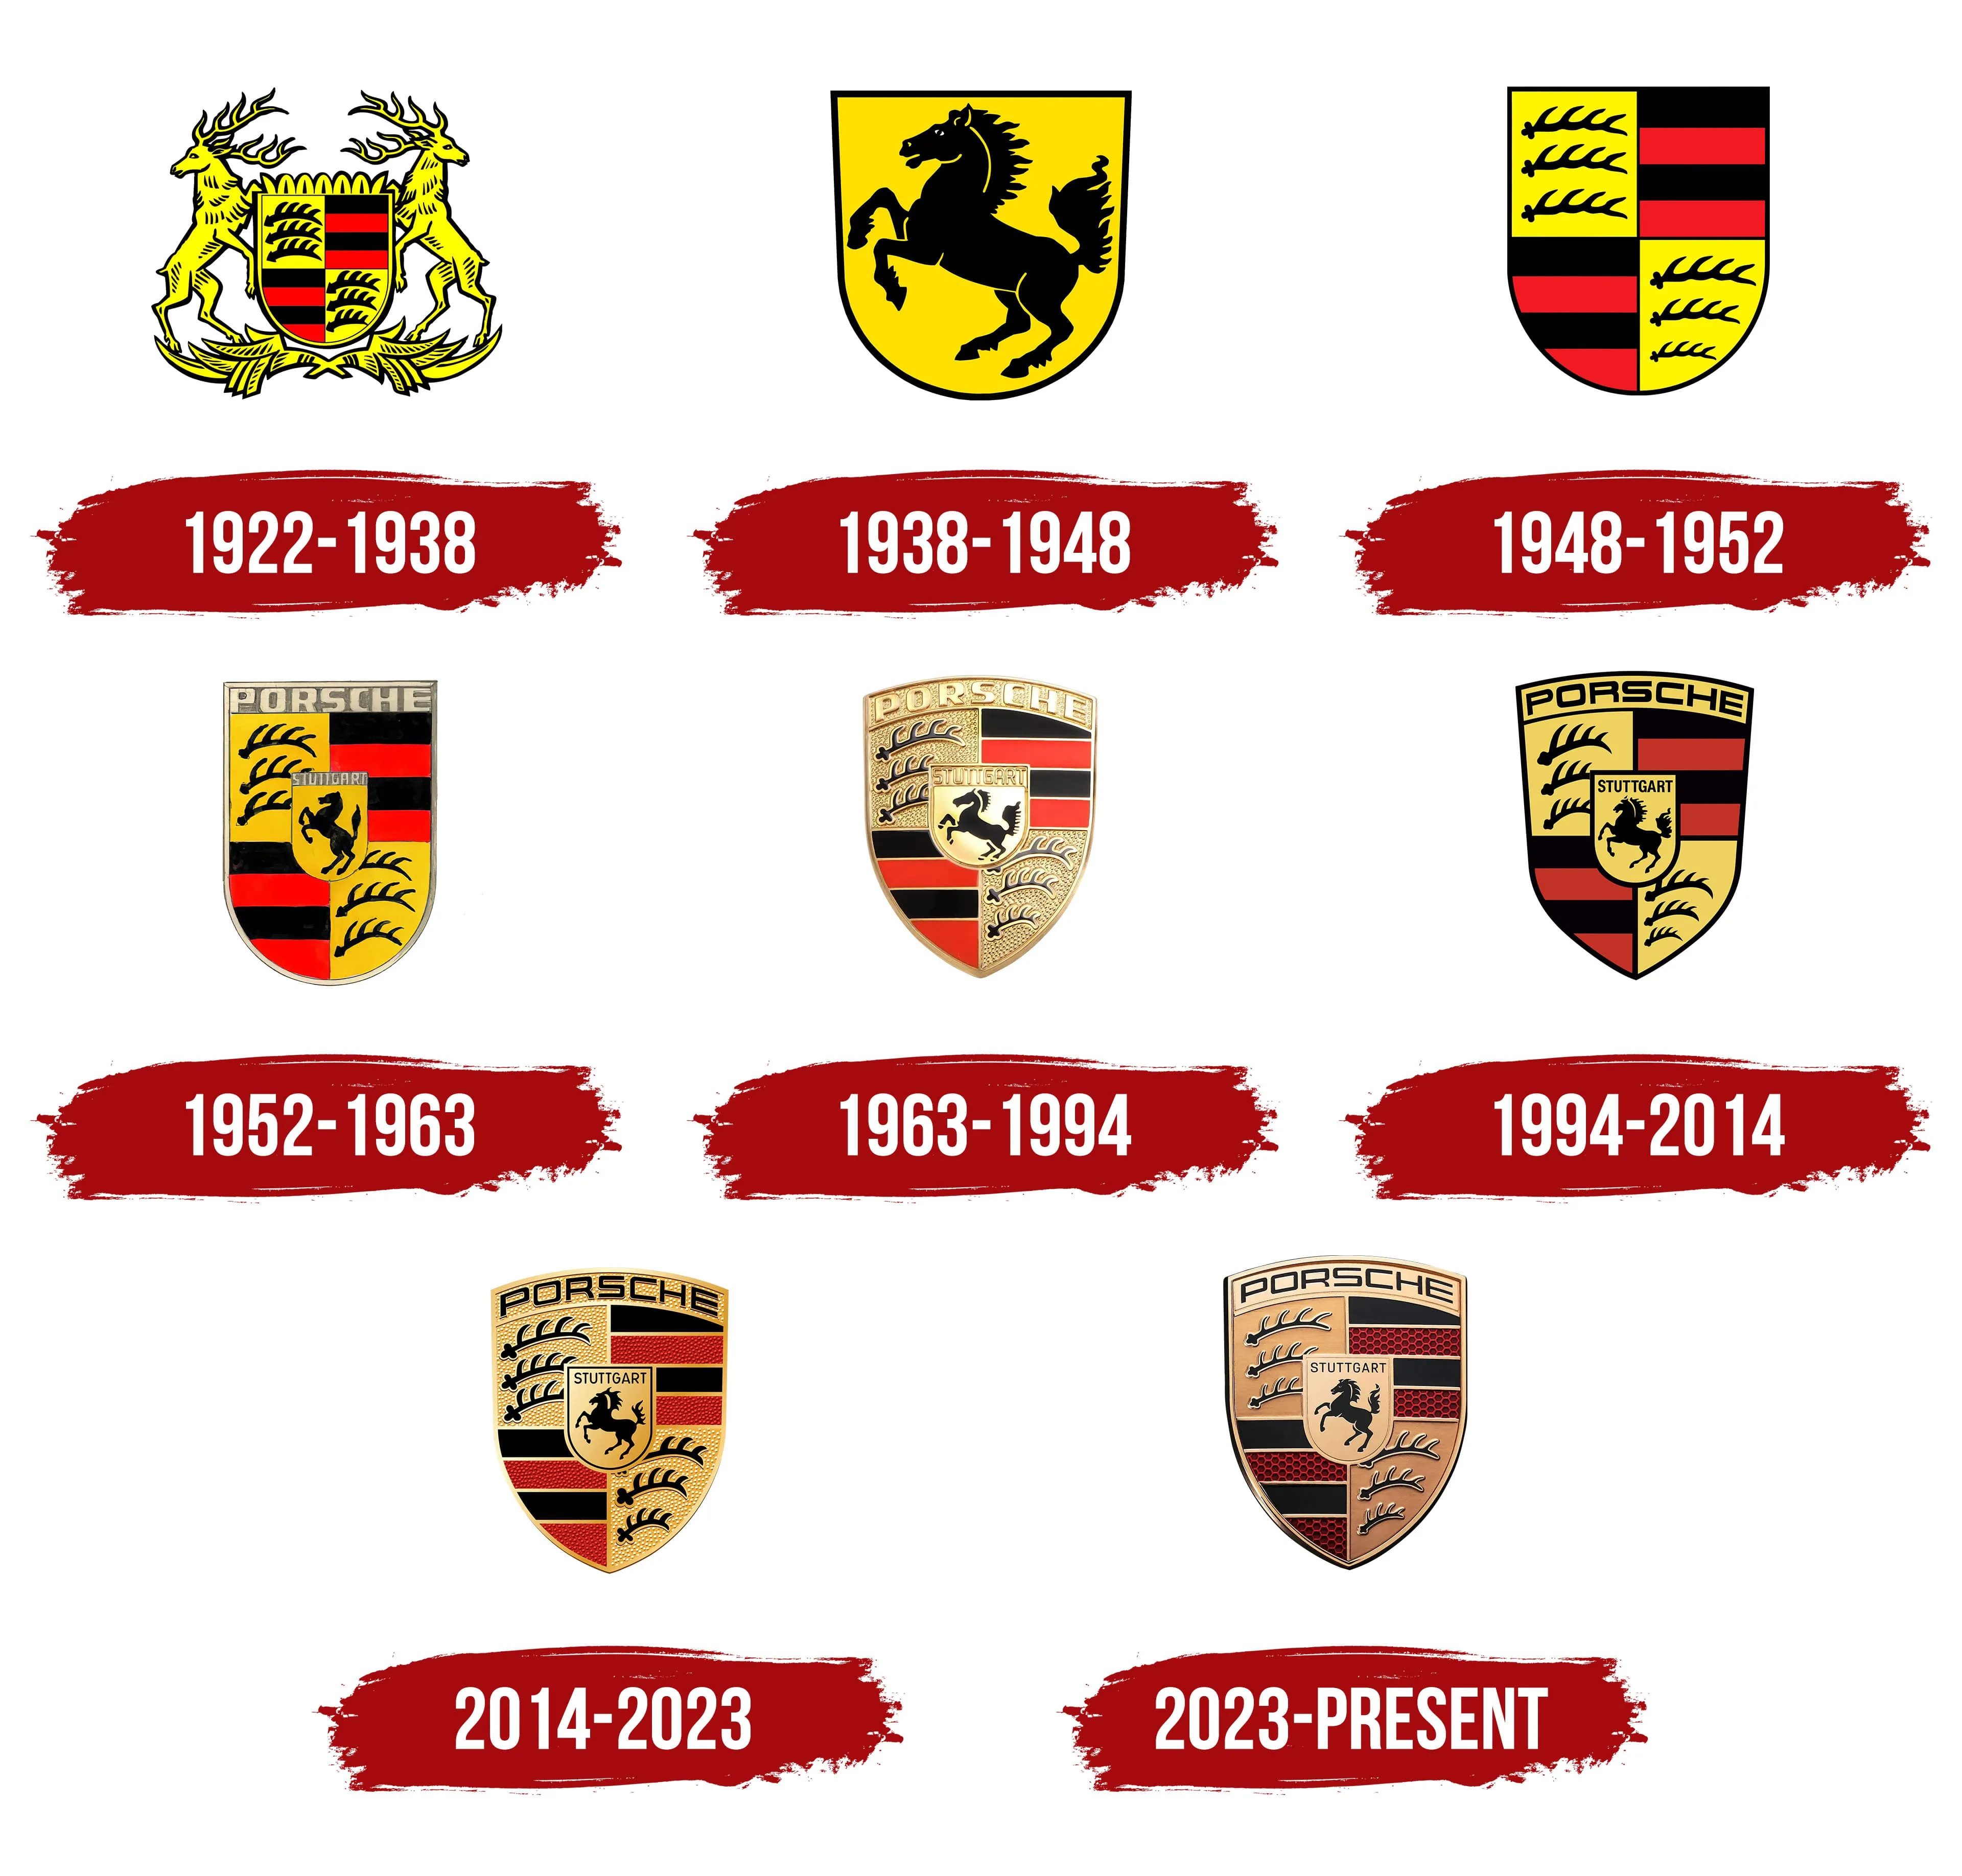 All Porsche logos